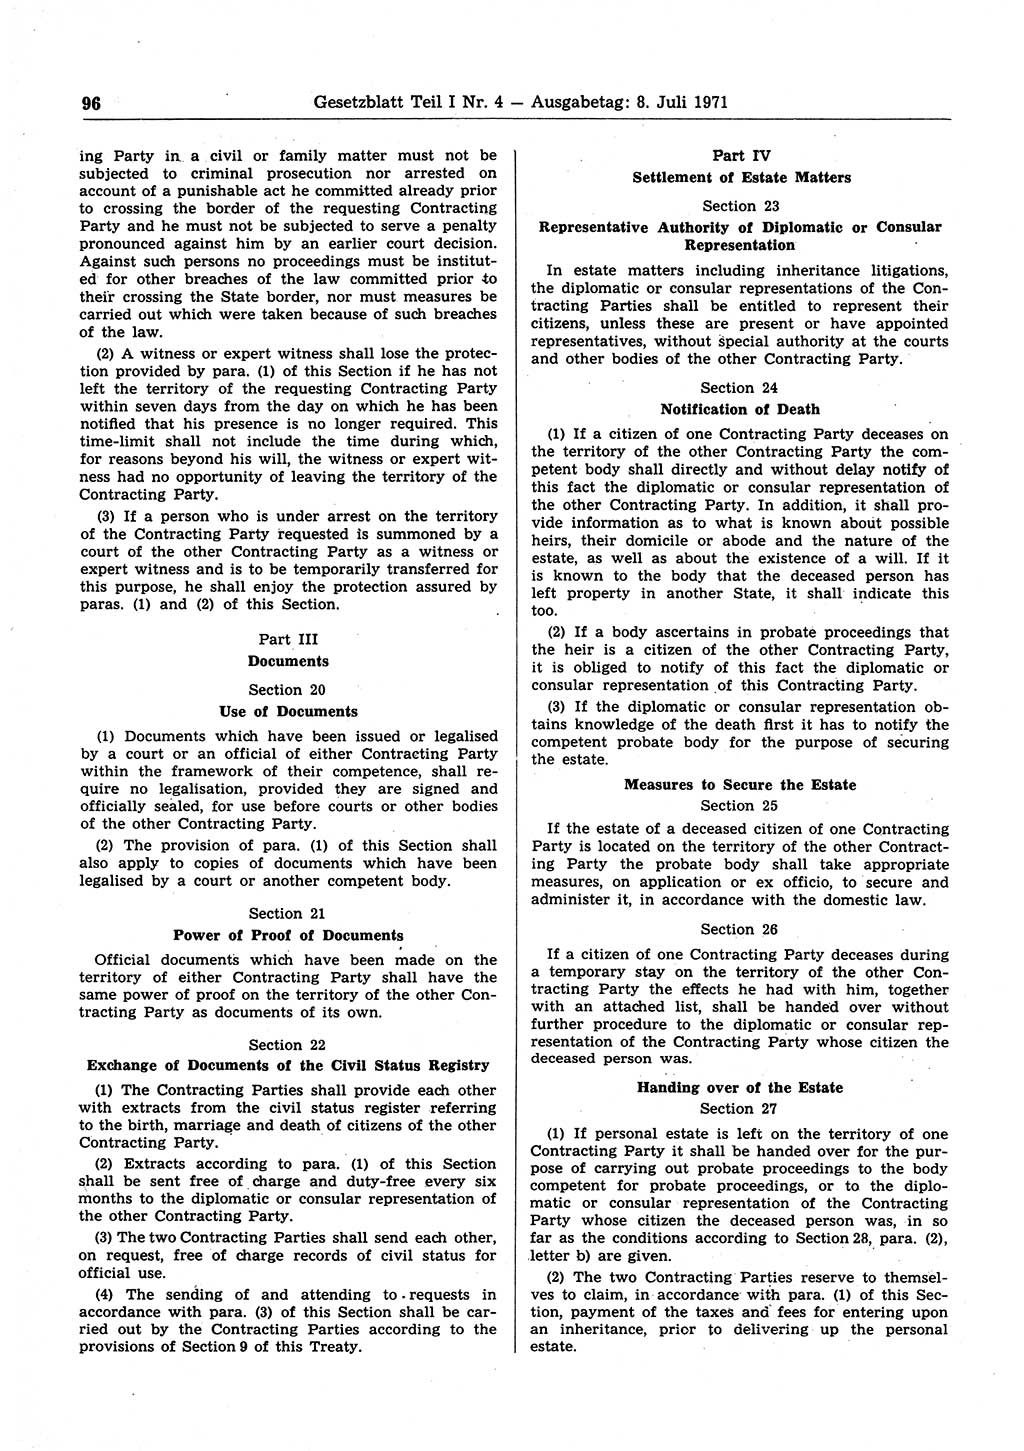 Gesetzblatt (GBl.) der Deutschen Demokratischen Republik (DDR) Teil Ⅰ 1971, Seite 96 (GBl. DDR Ⅰ 1971, S. 96)